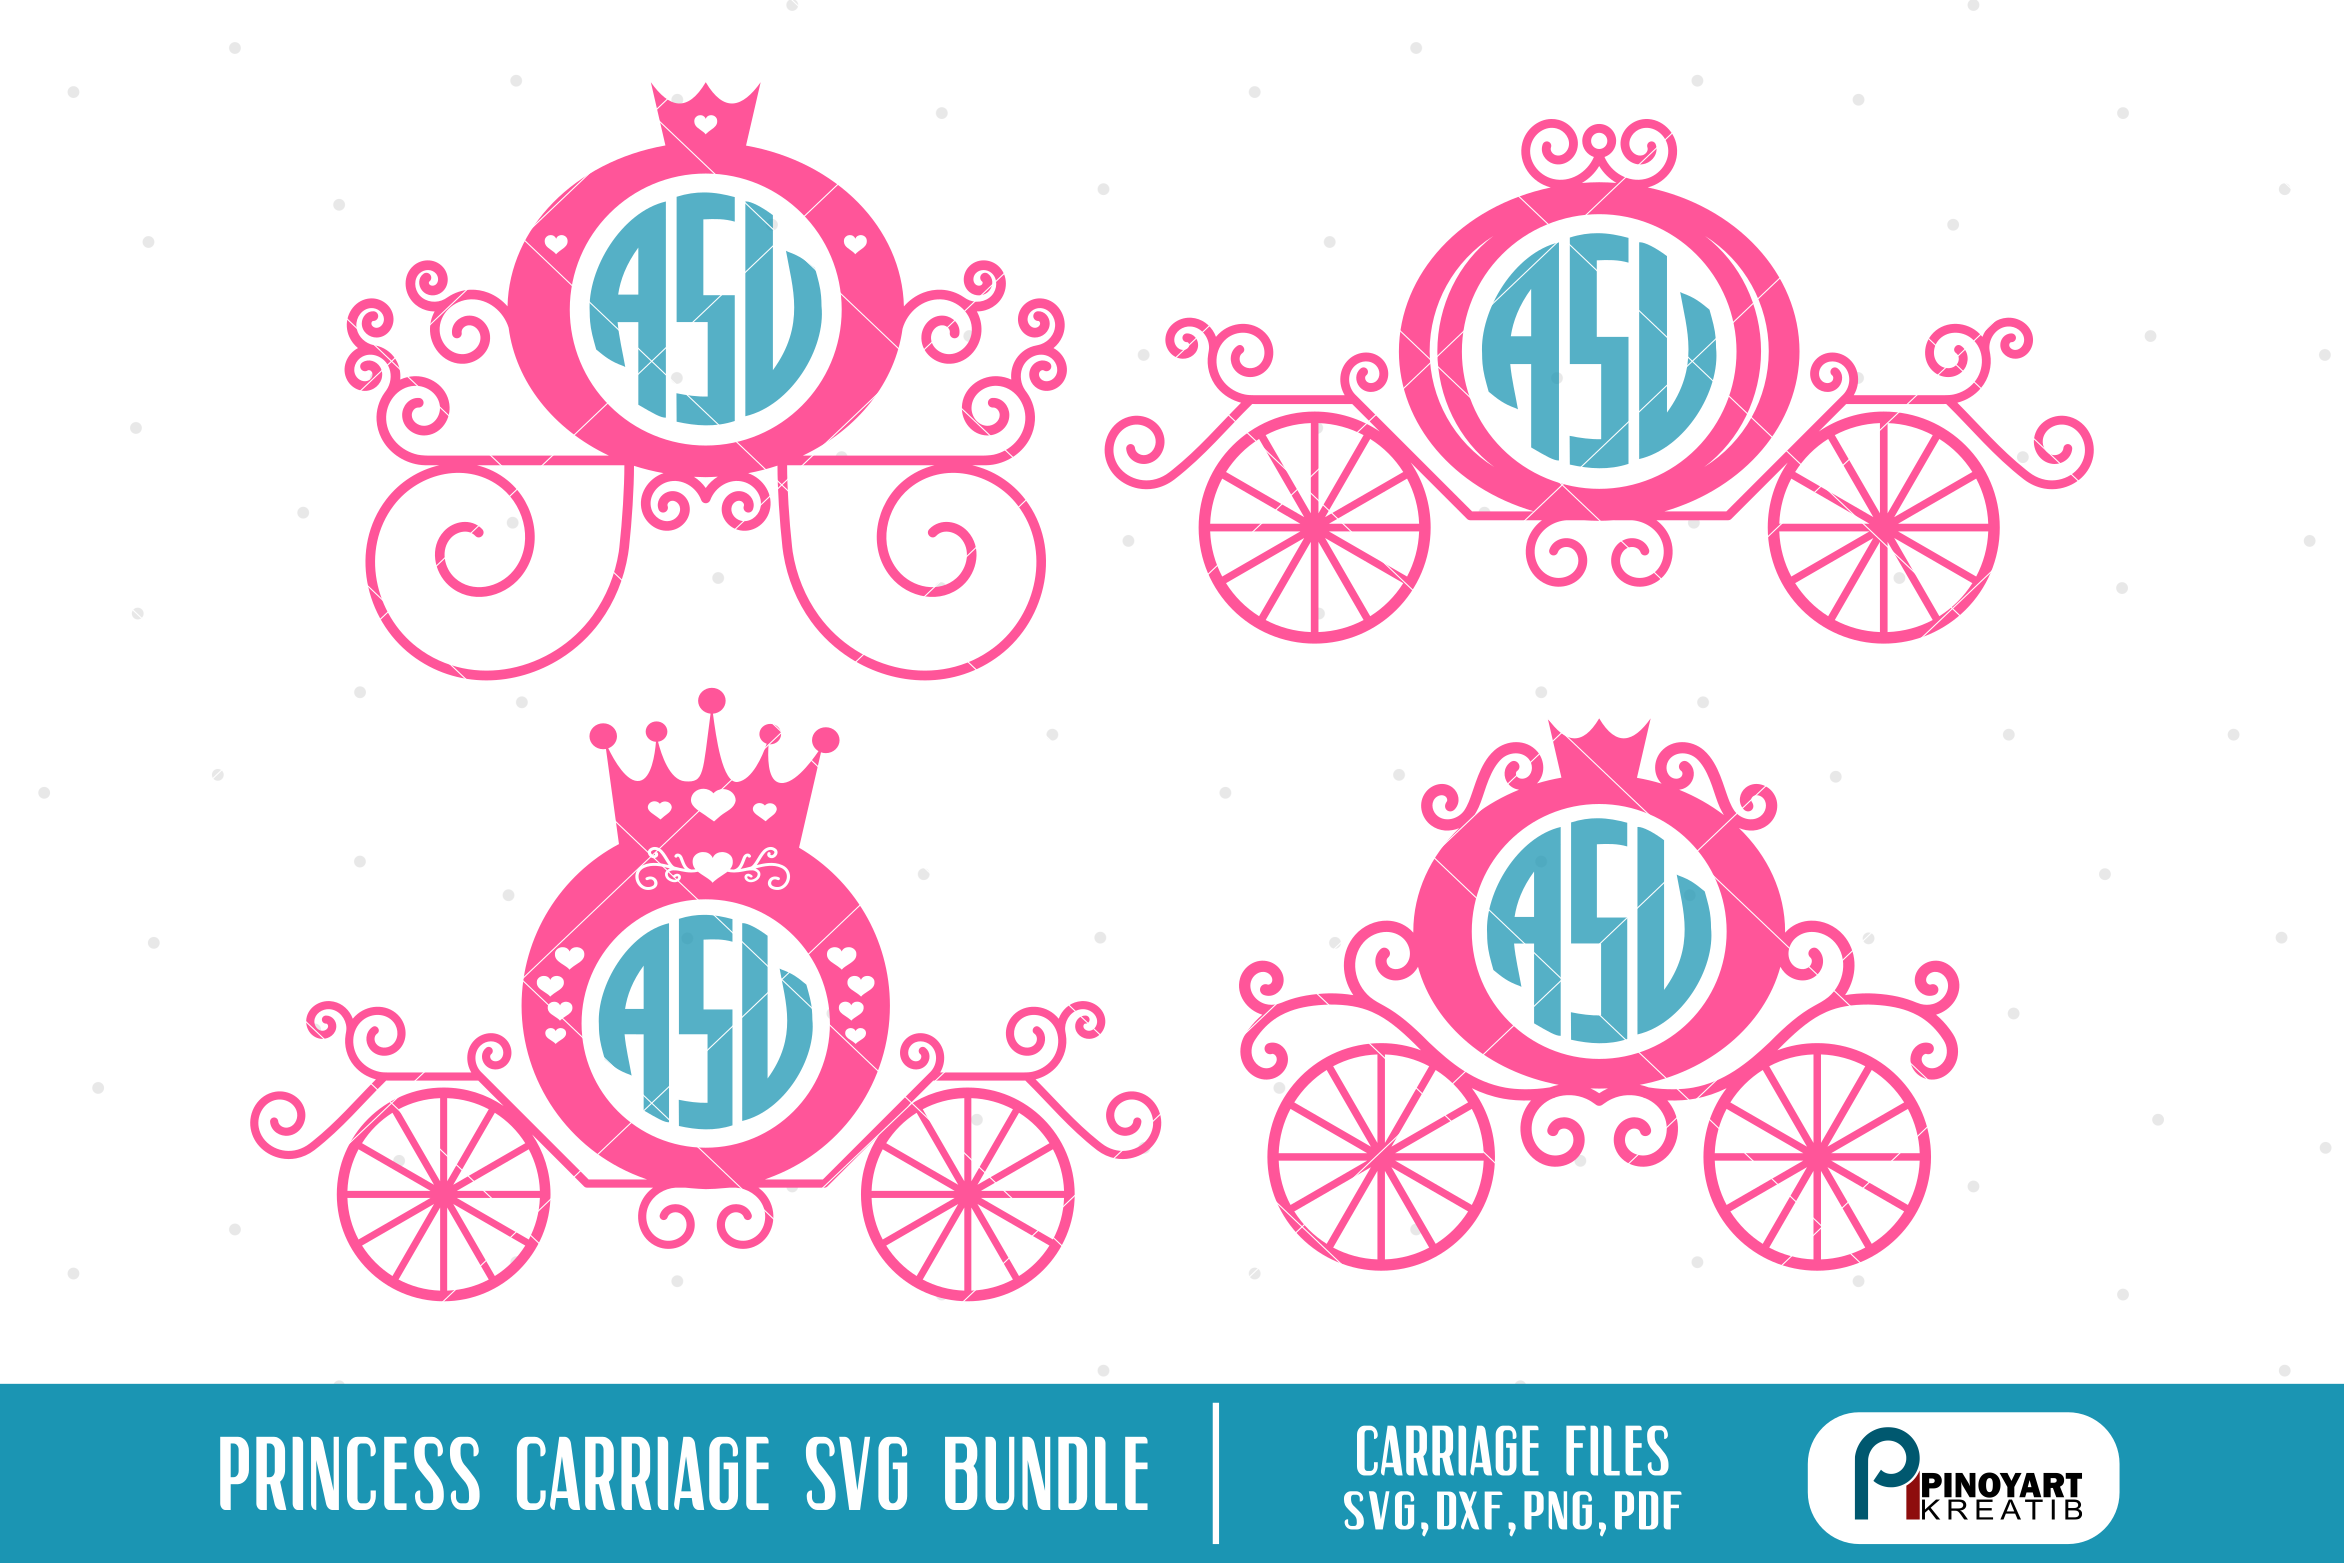 Princess Carriage SVG Bundle - princess vector files